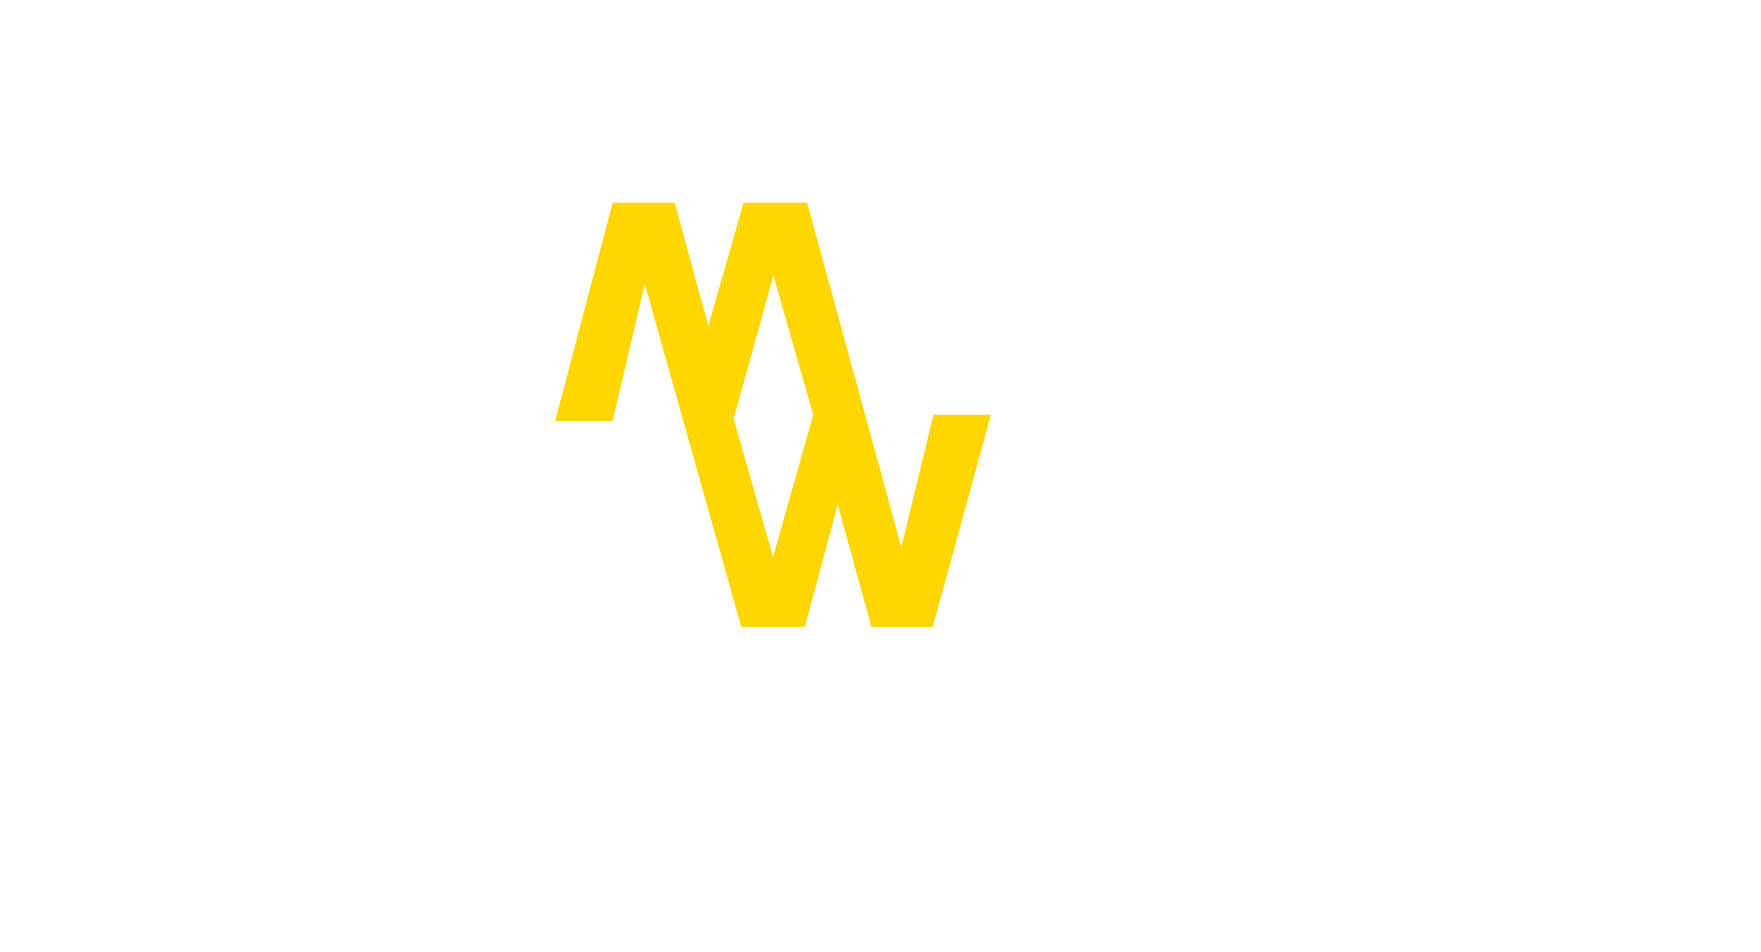 1st INVITATION in Japan